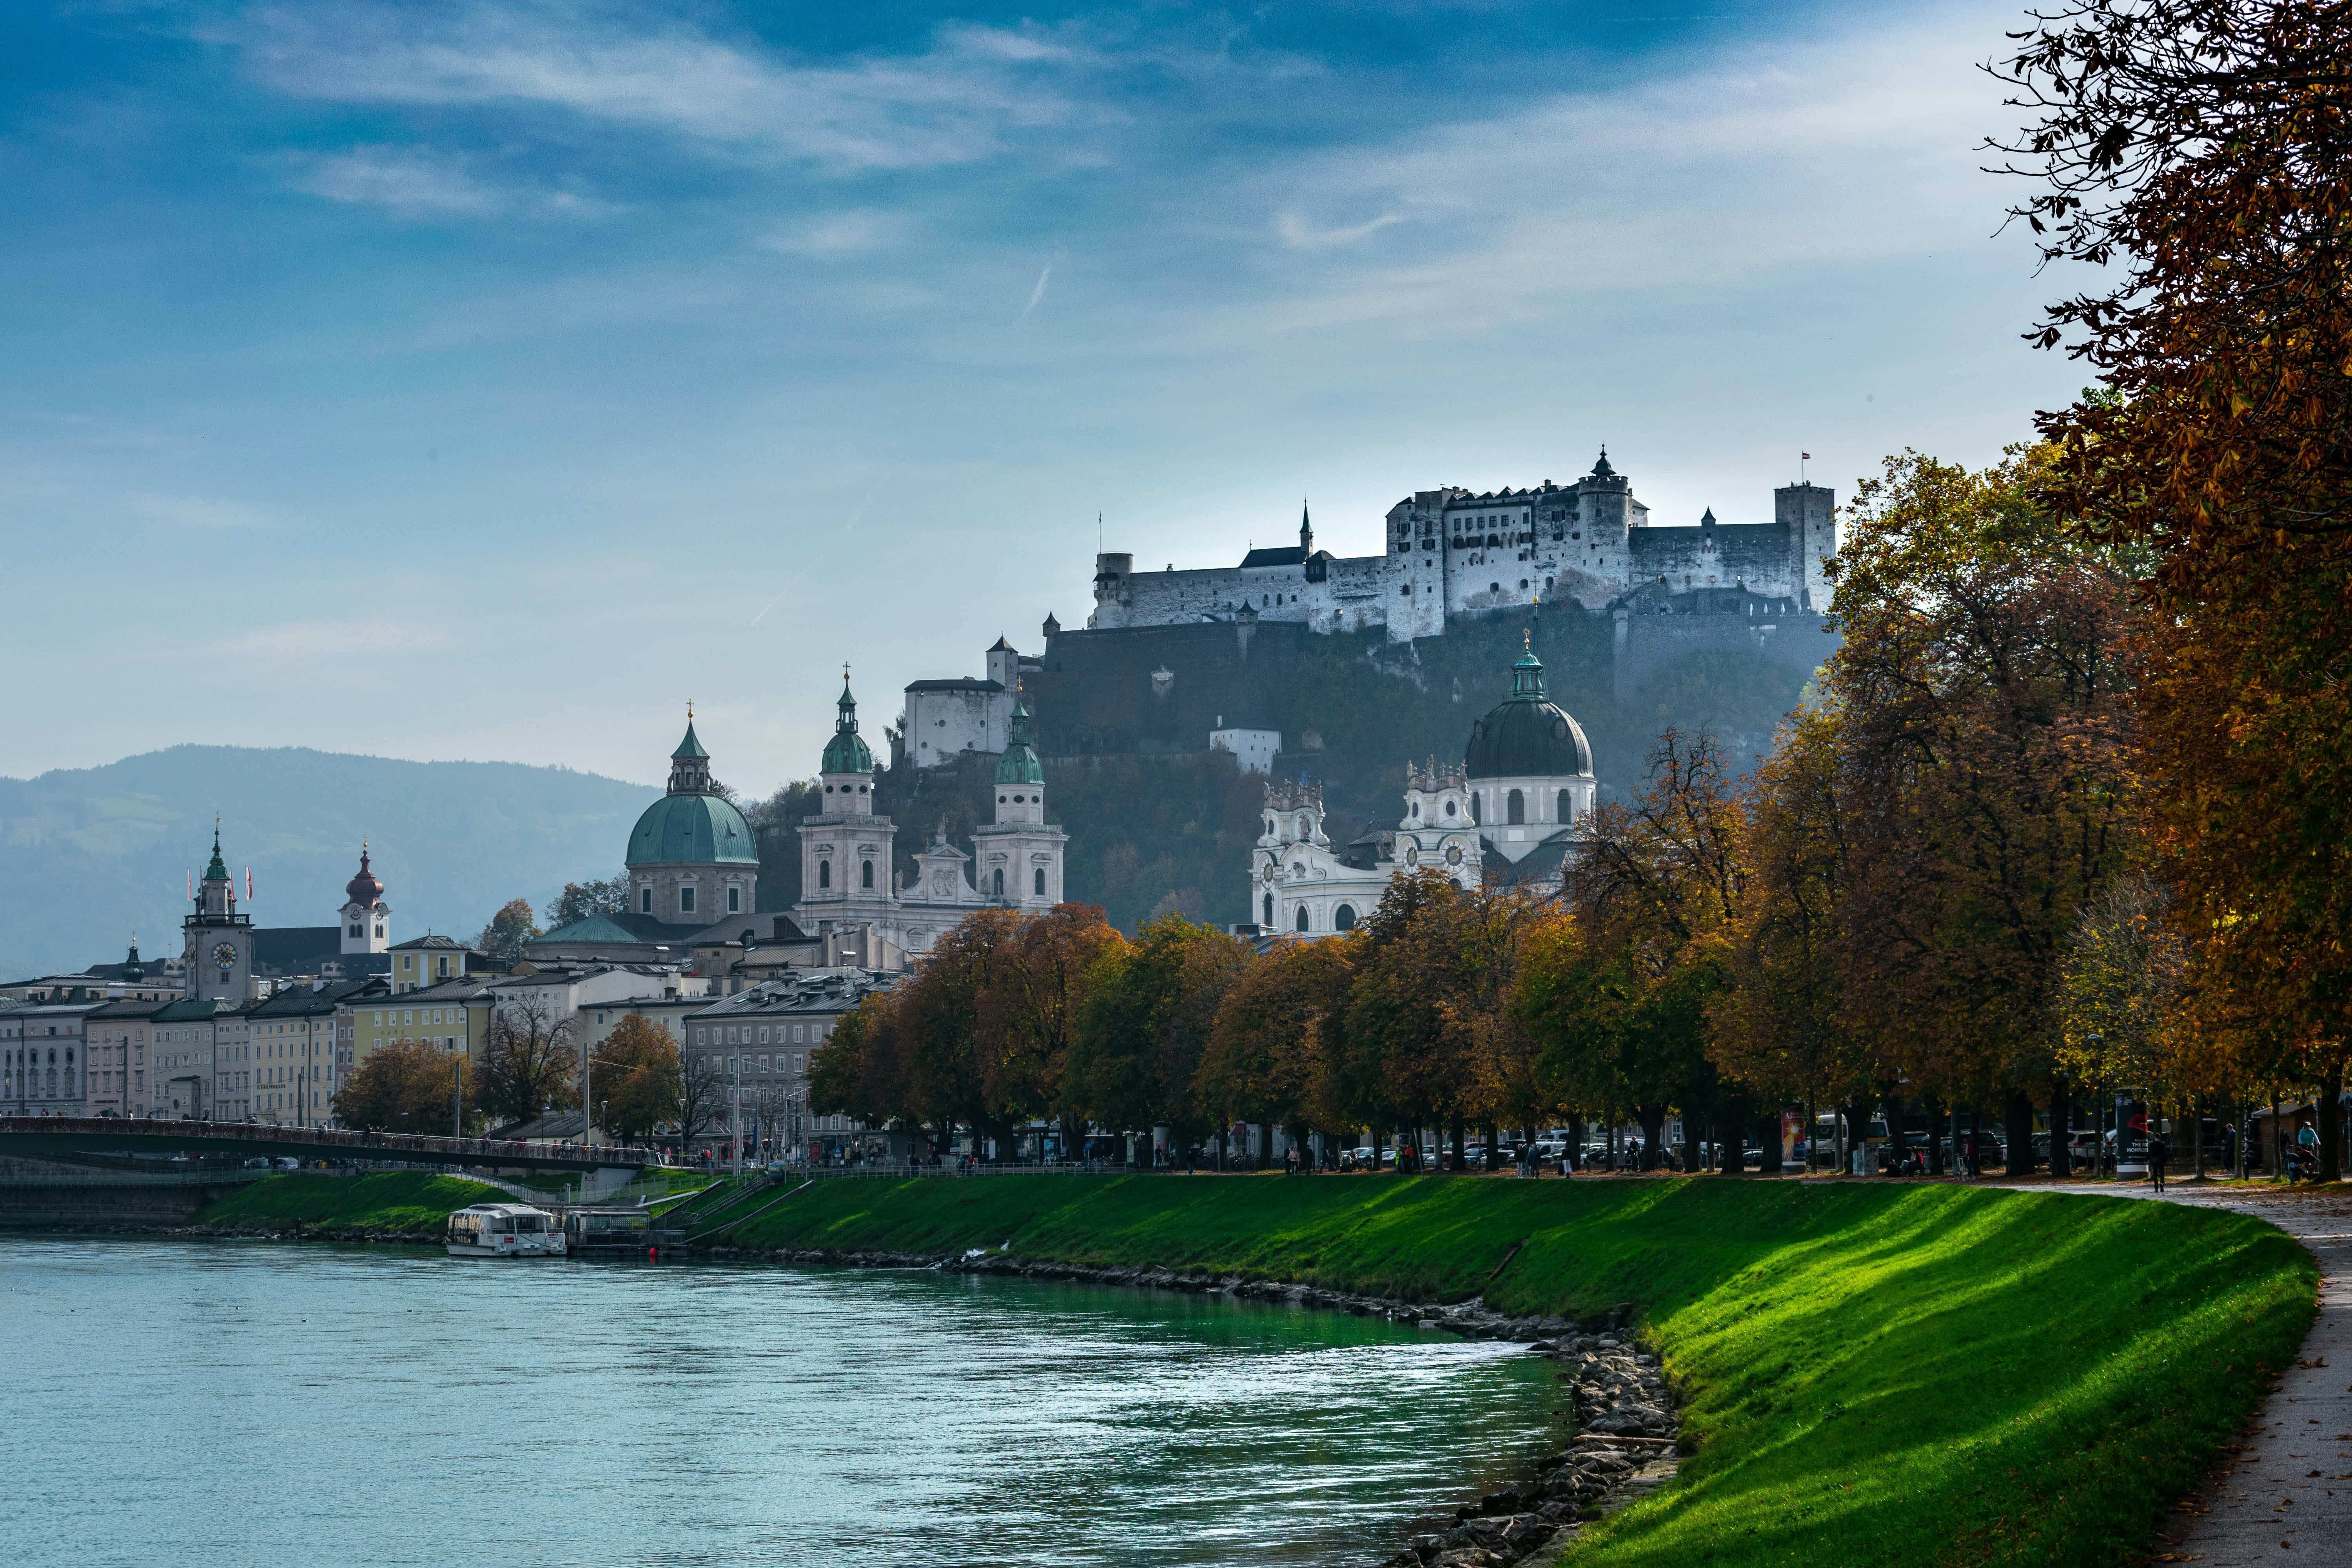 Erlebe die hohe Lebensqualität in Tamsweg, Salzburg. Entdecke die regionalen Vorzüge und die Schönheit dieser malerischen Stadt in den österreichischen Alpen.